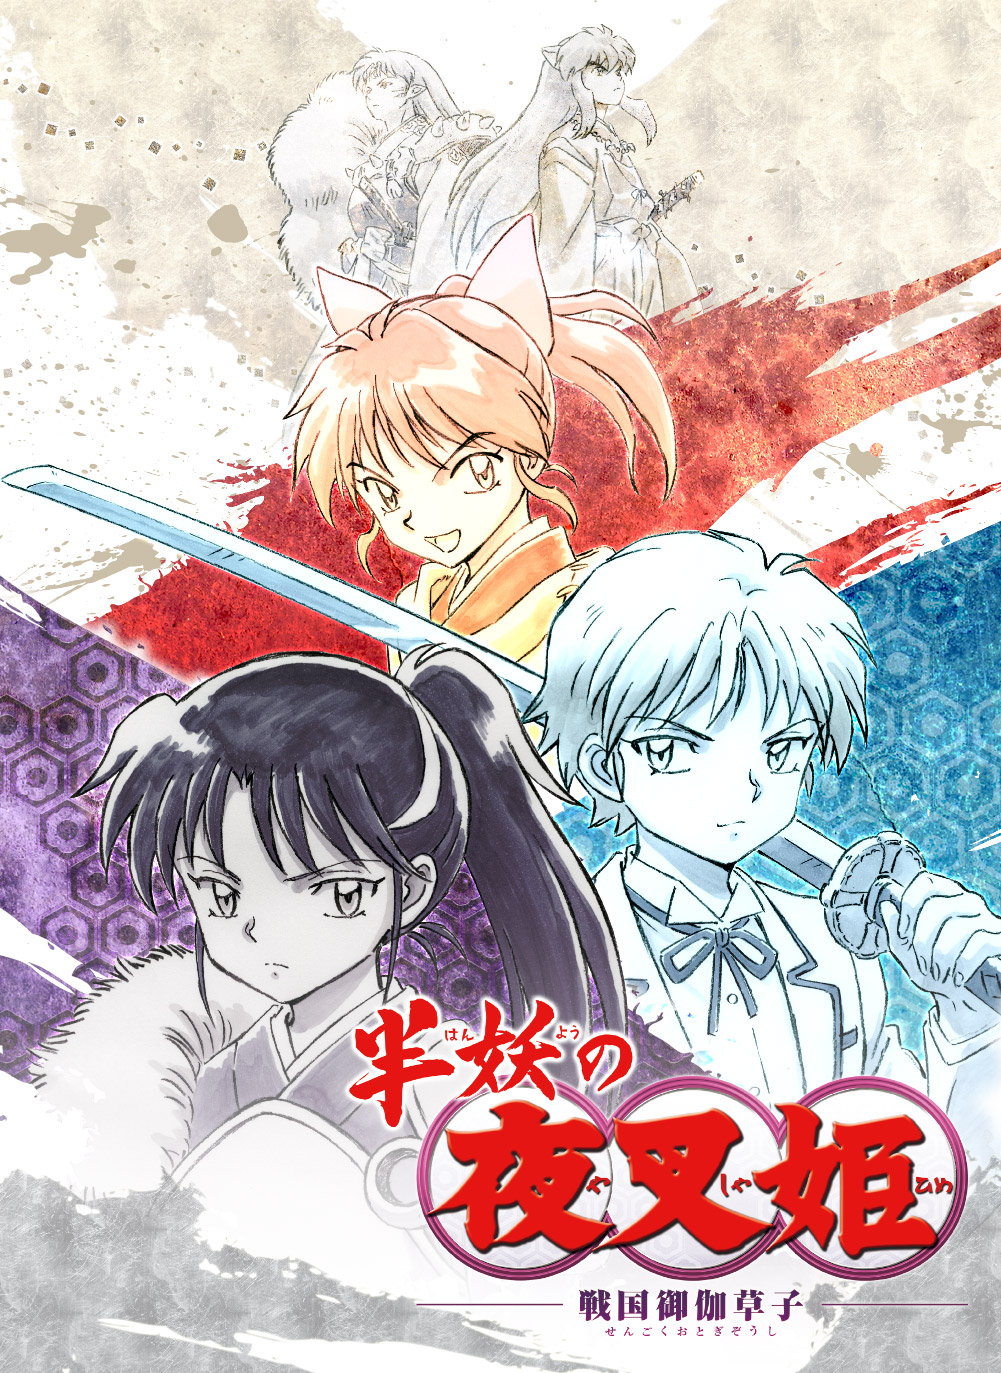 OtakuErrante] Calendario de Estrenos Anime Otoño 2020. V4.0